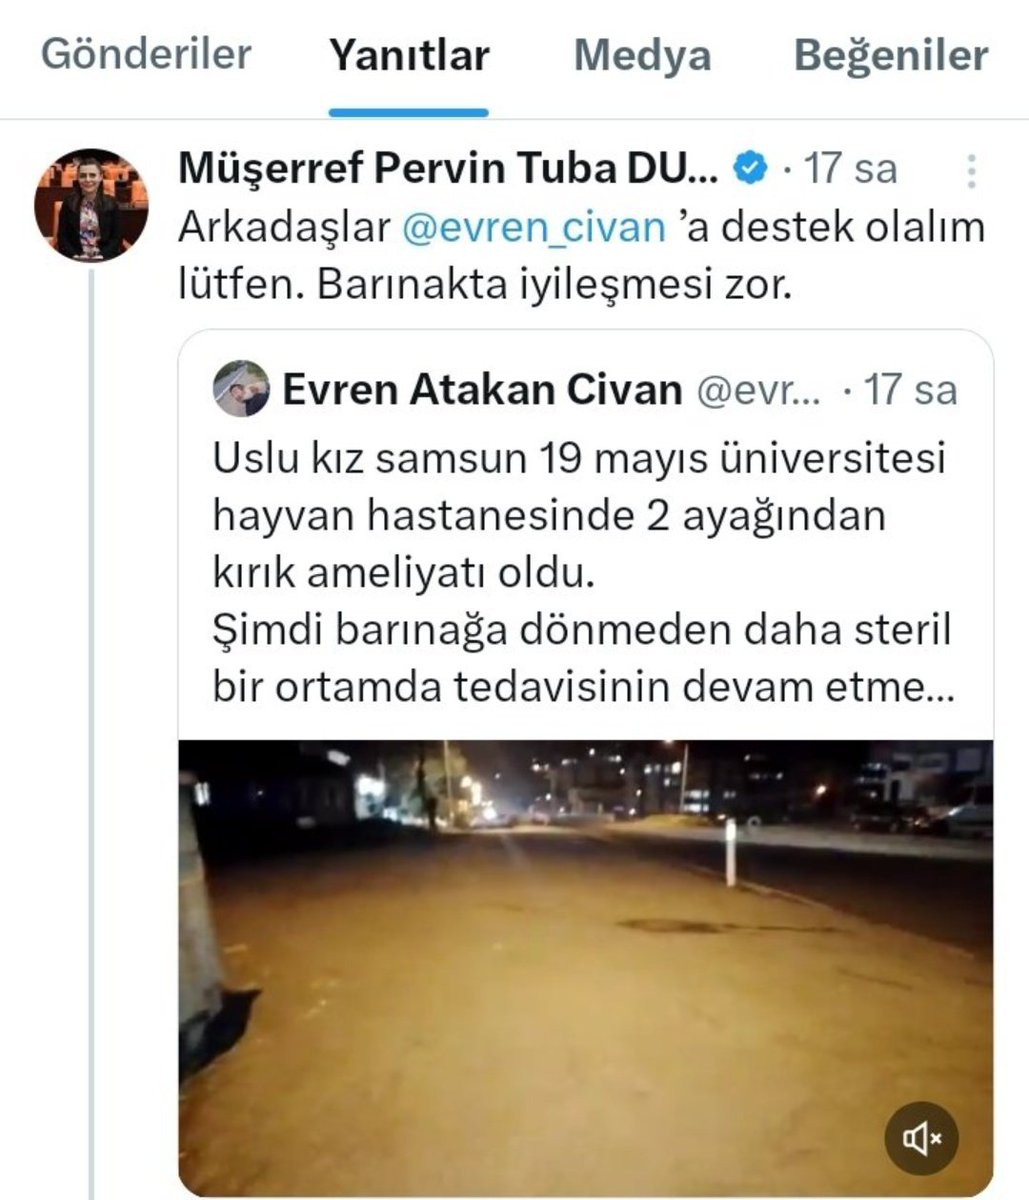 AKP milletvekili Müşerref Pervin Tuba başıboş köpek dilendiren birisi için destek talep etti.

Kendi maaşından destek verip vermediği meraklar konusu.